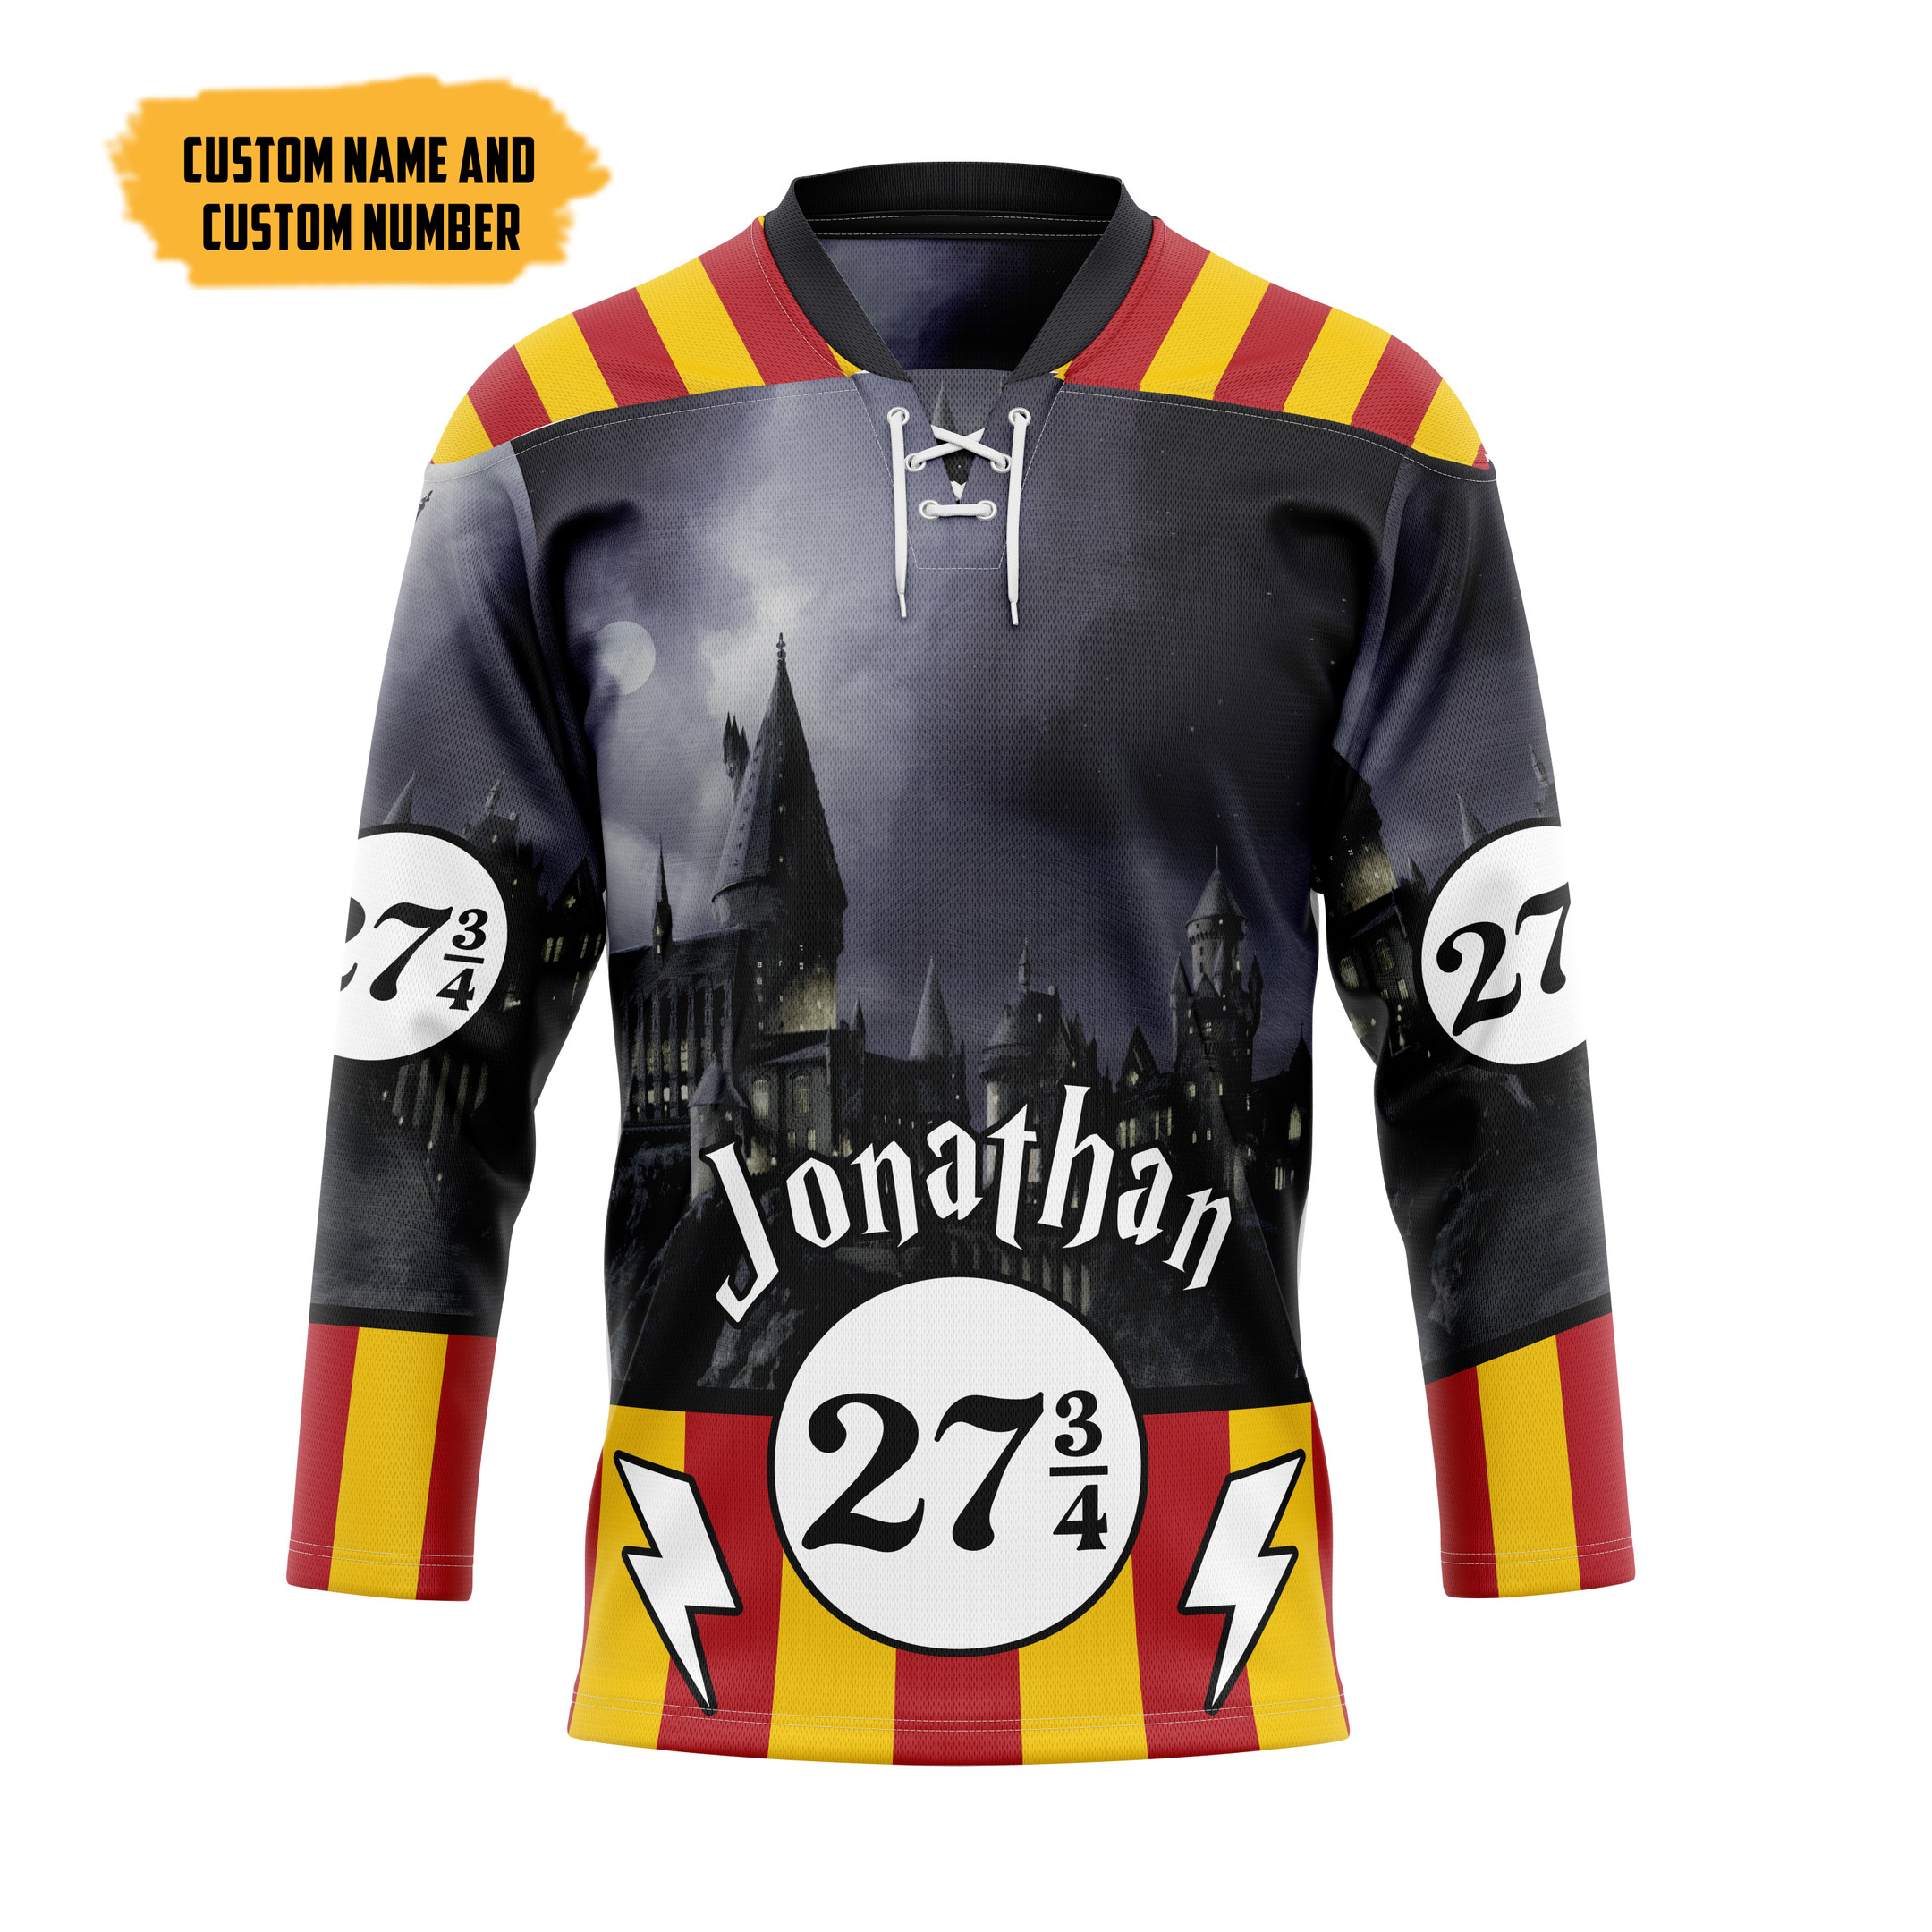 The Best Hockey Jersey Shirt 178